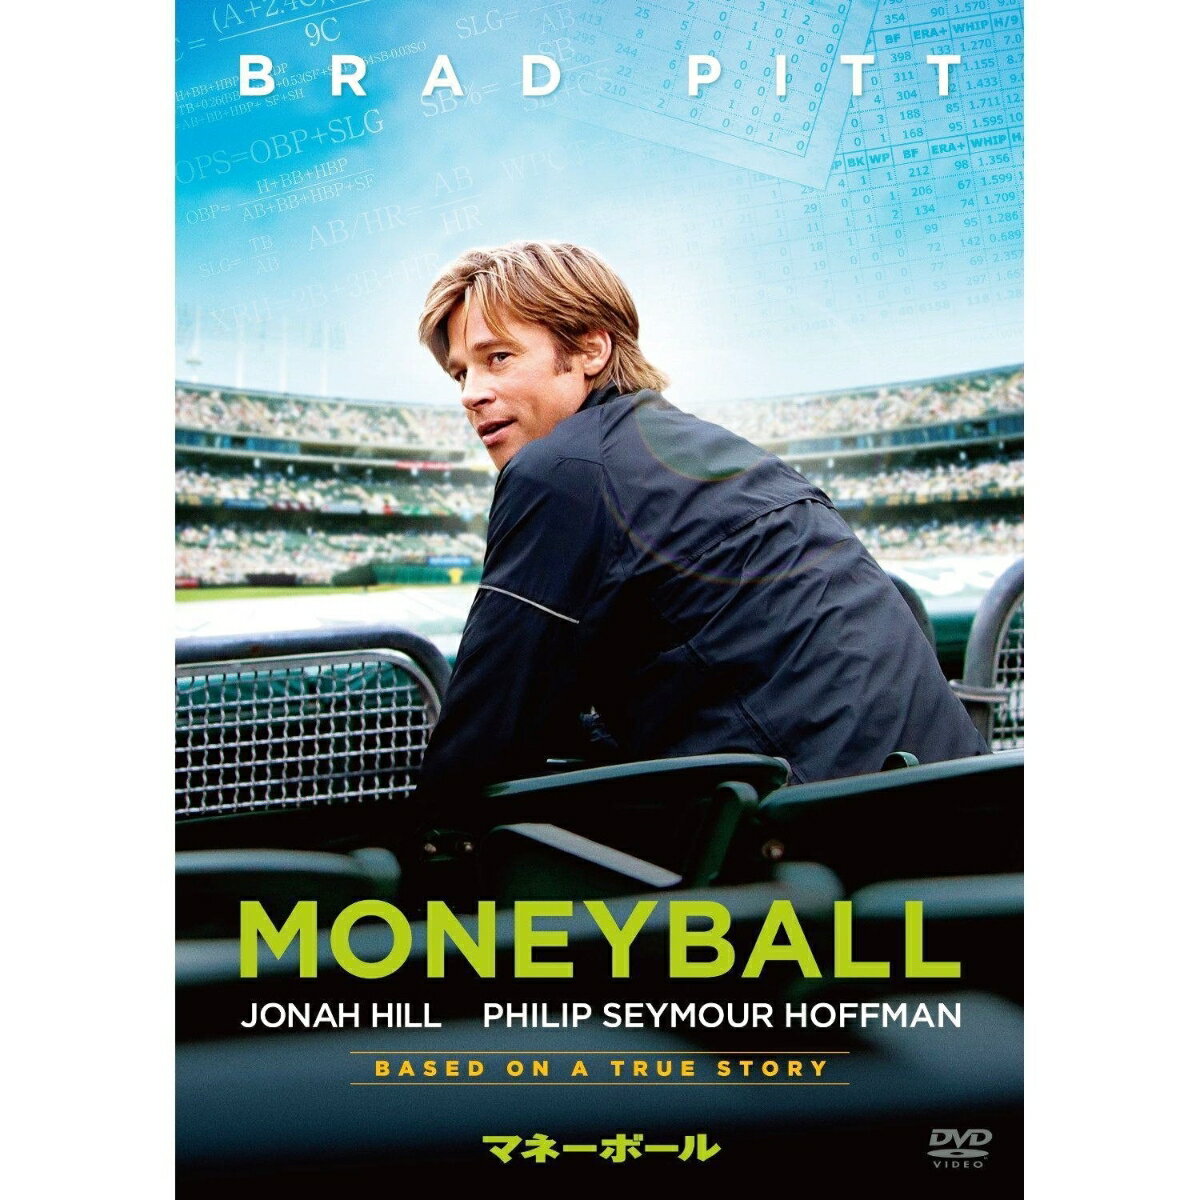 映画 マネーボール で学ぶ英語表現 野球はロマンチックなスポーツ 映画で英語 Enjoy Movie English